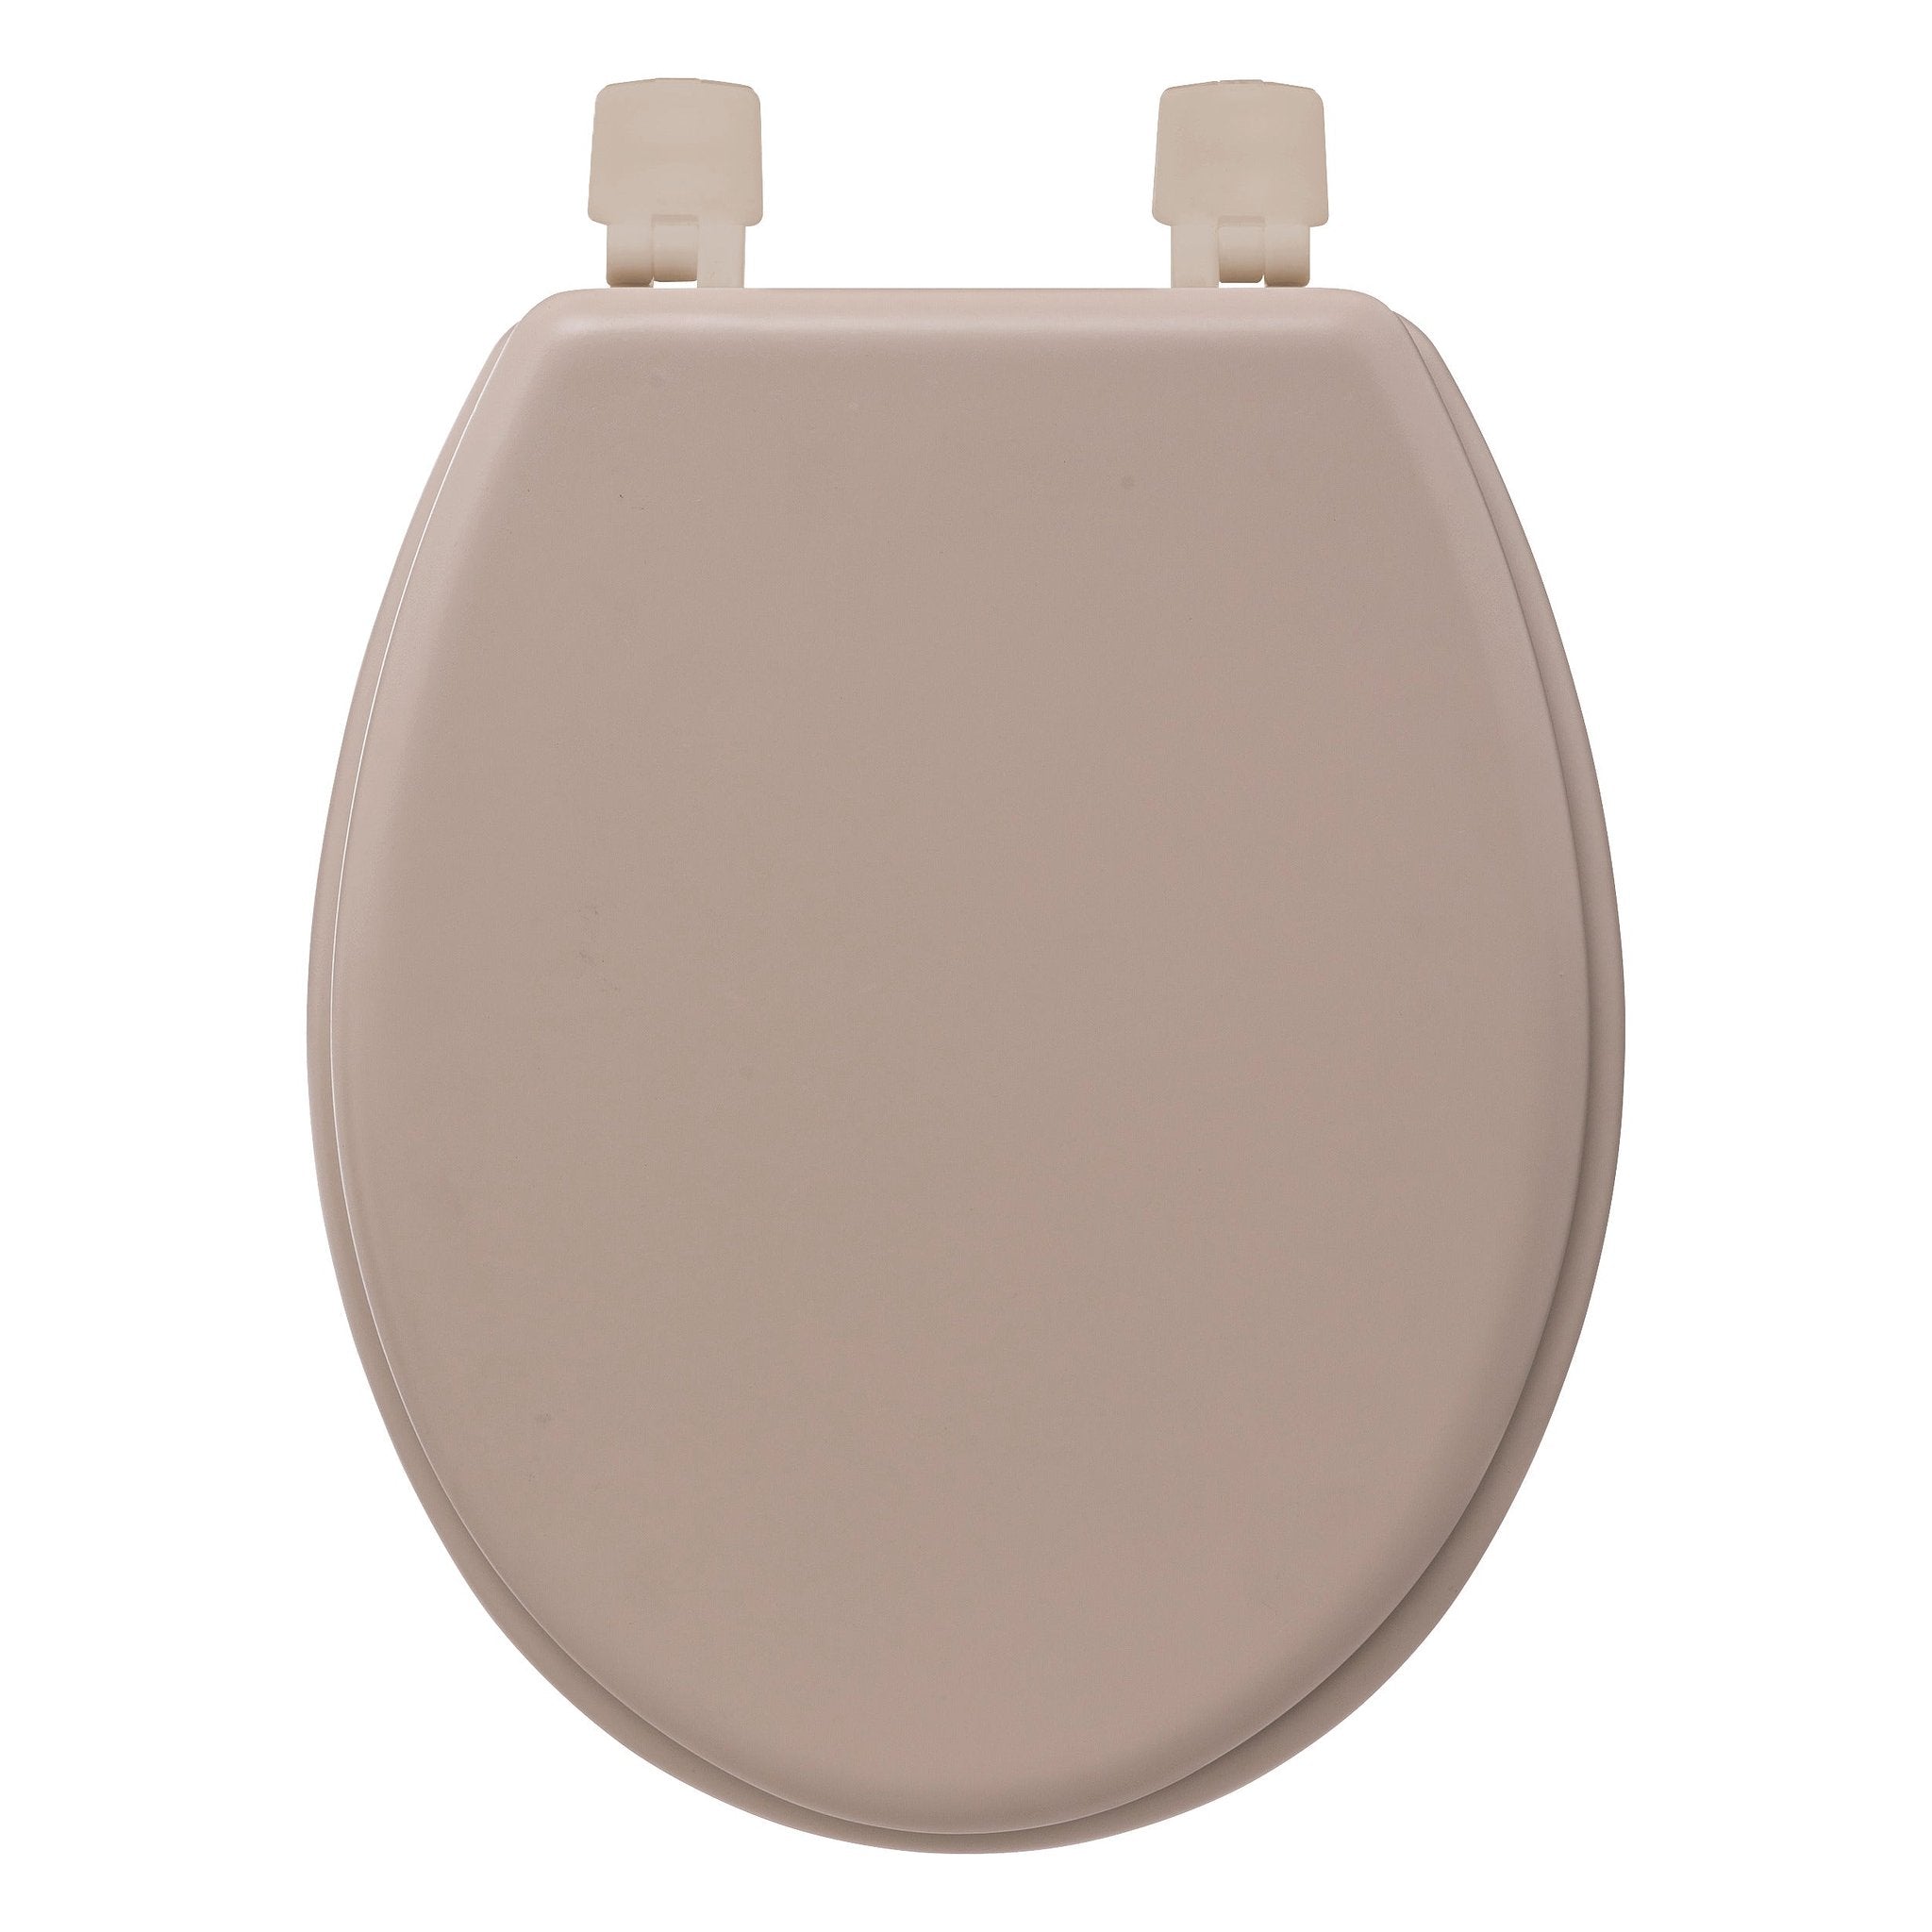 5Five Cotton Colors Toiletbril - 36x48x5cm - Linnen